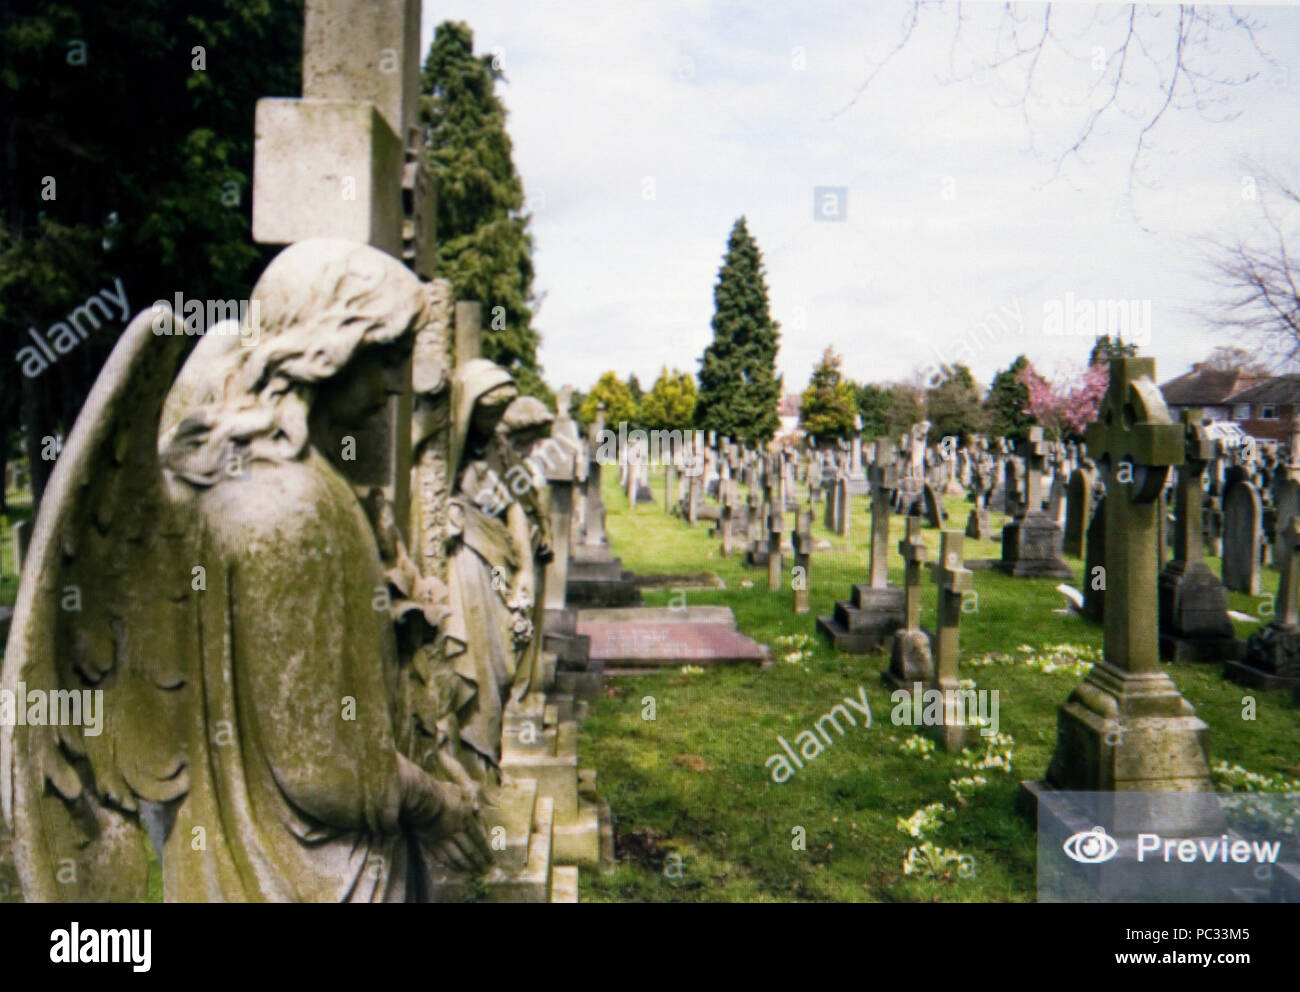 Alamy aperçu de l'image de Brompton Cemetery sur London UK Banque D'Images